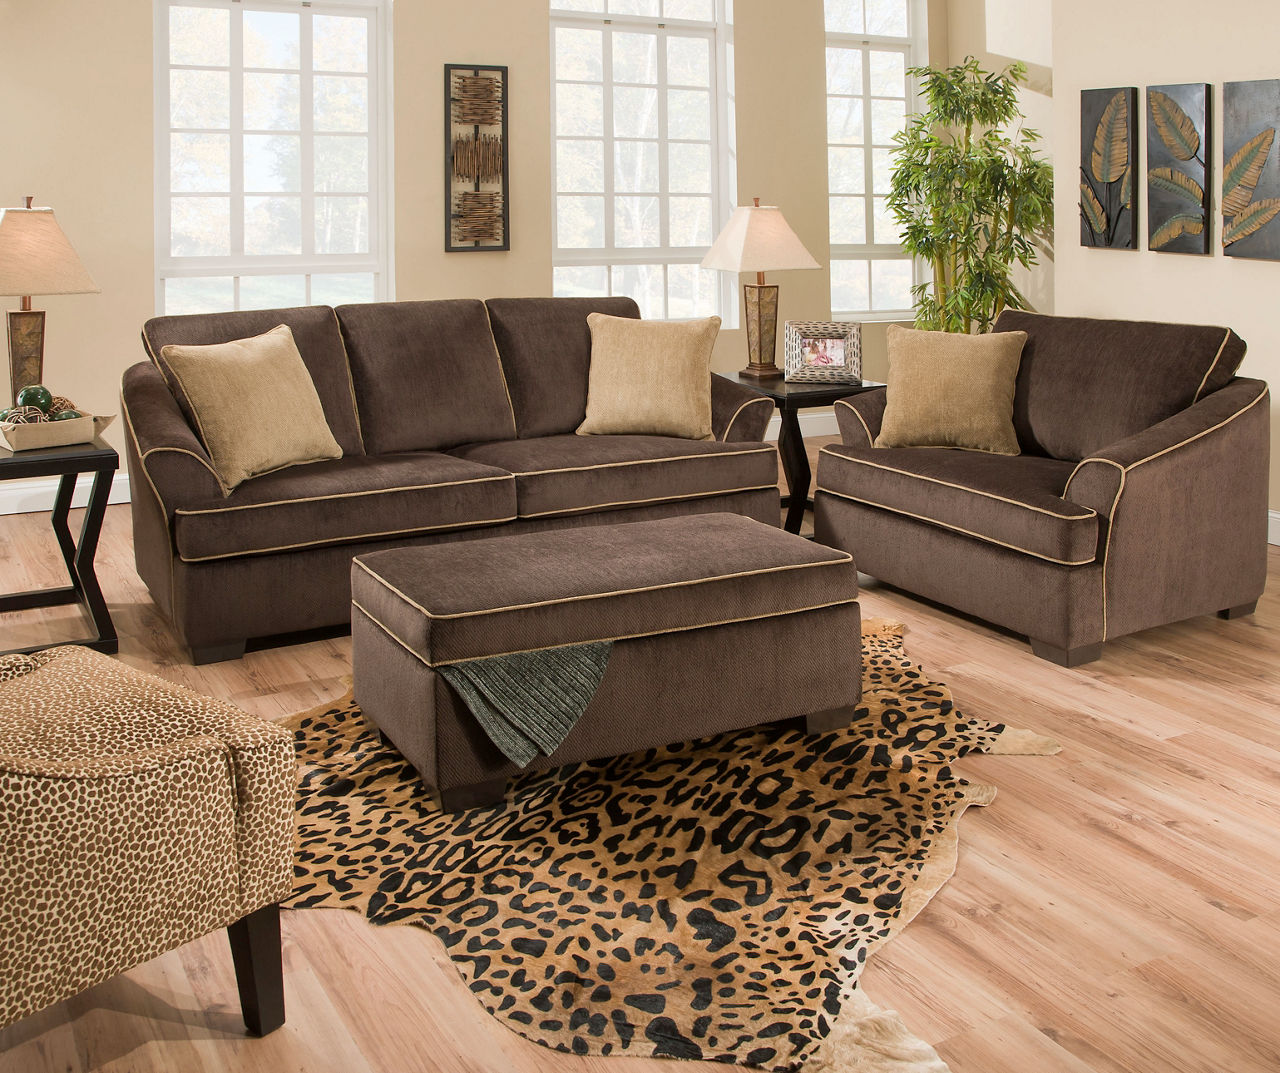 Sequoia Living Room Furniture